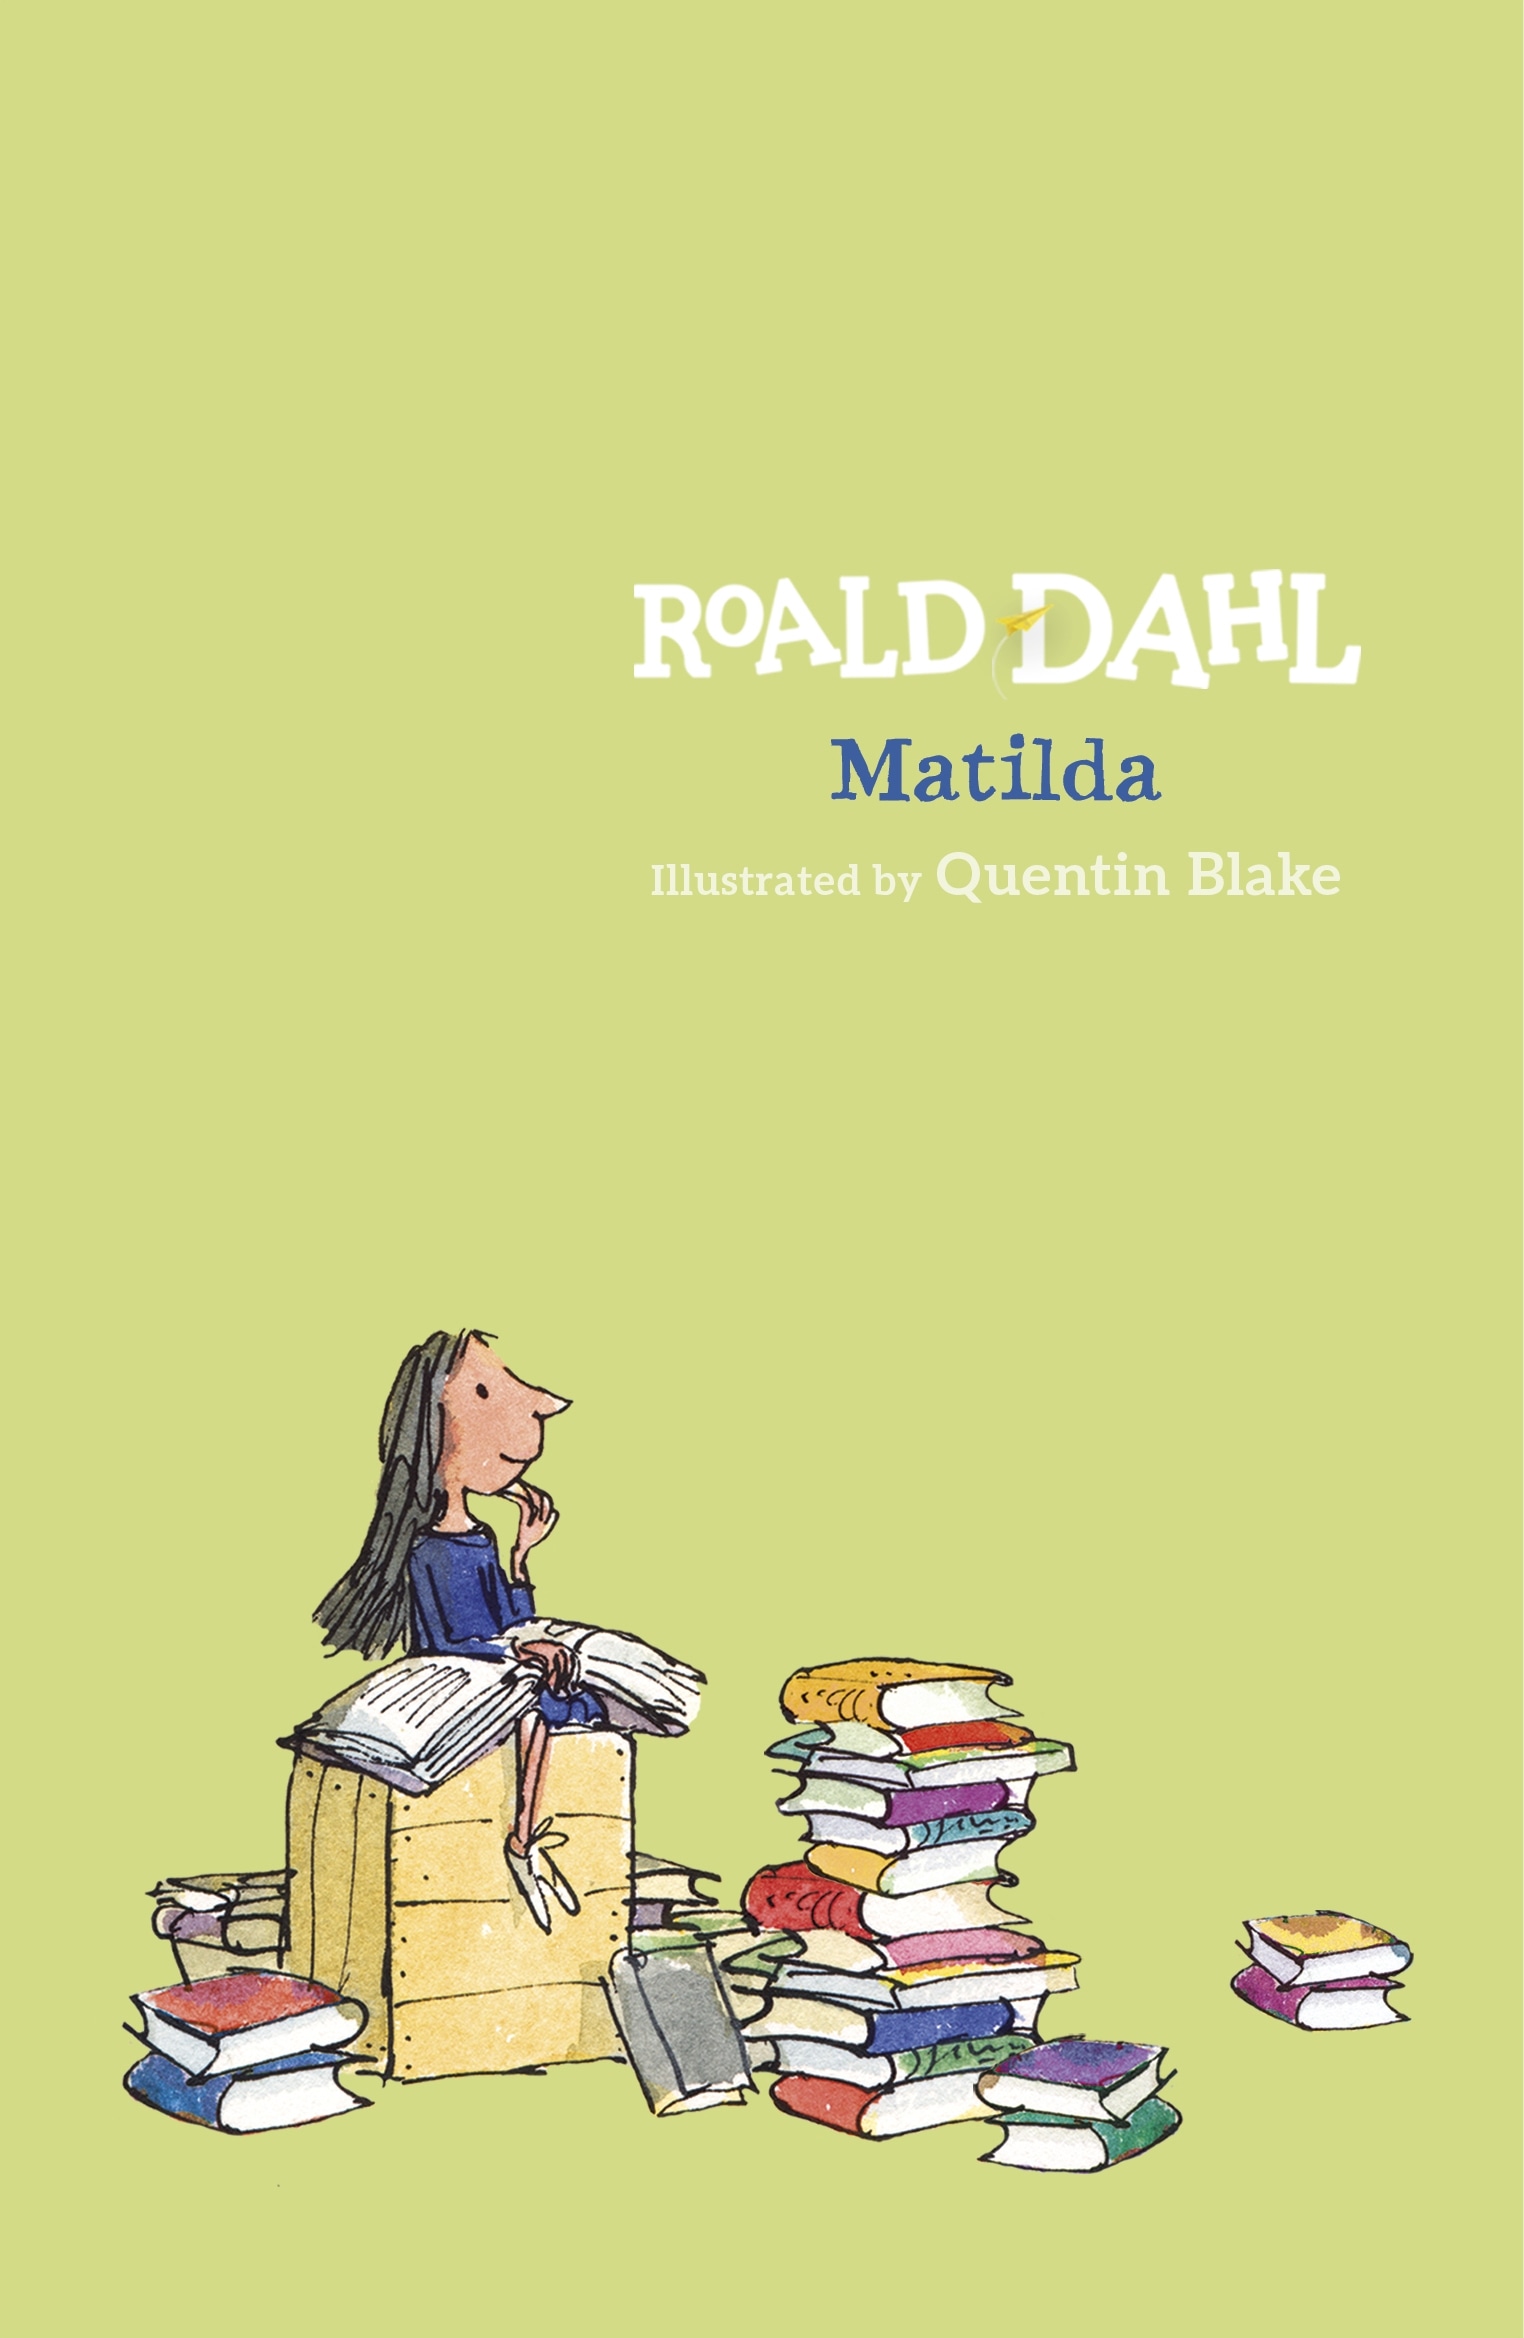 Book “Matilda” by Roald Dahl — September 1, 2016